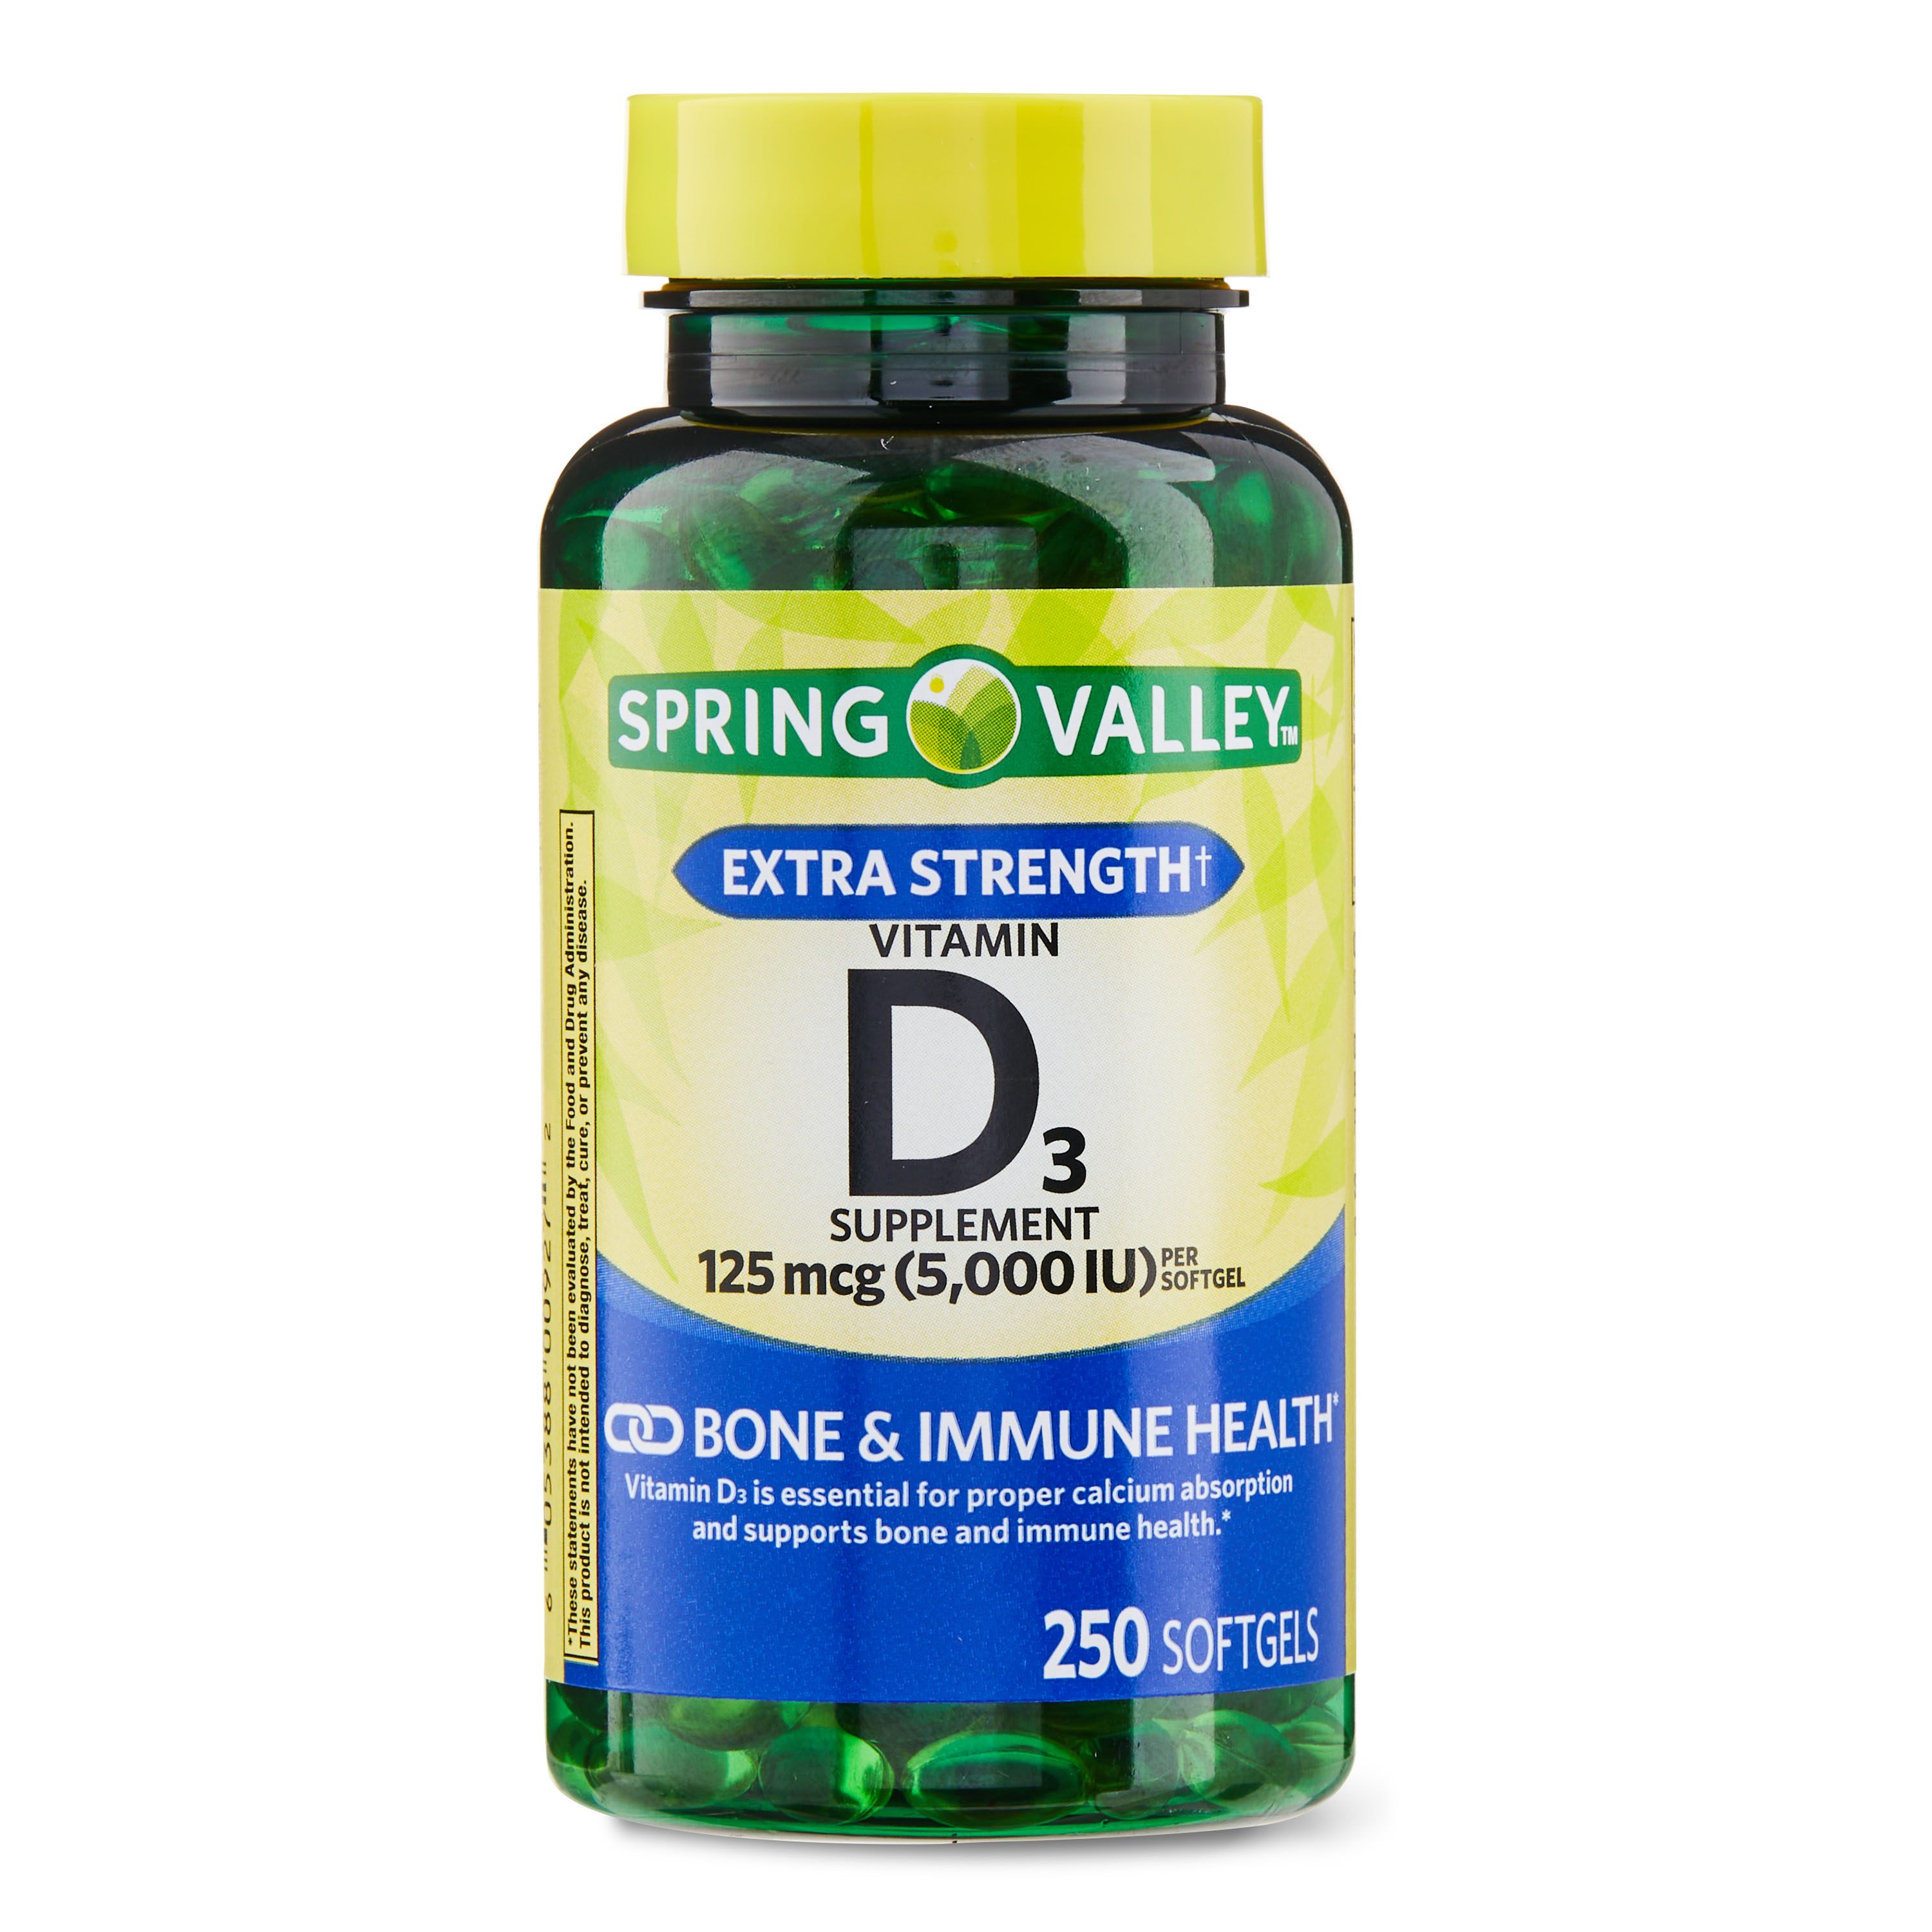 Spring Valley Vitamin D3 Softgels, 125 mcg per Softgel, 5,000 IU, 250 Count - image 1 of 16